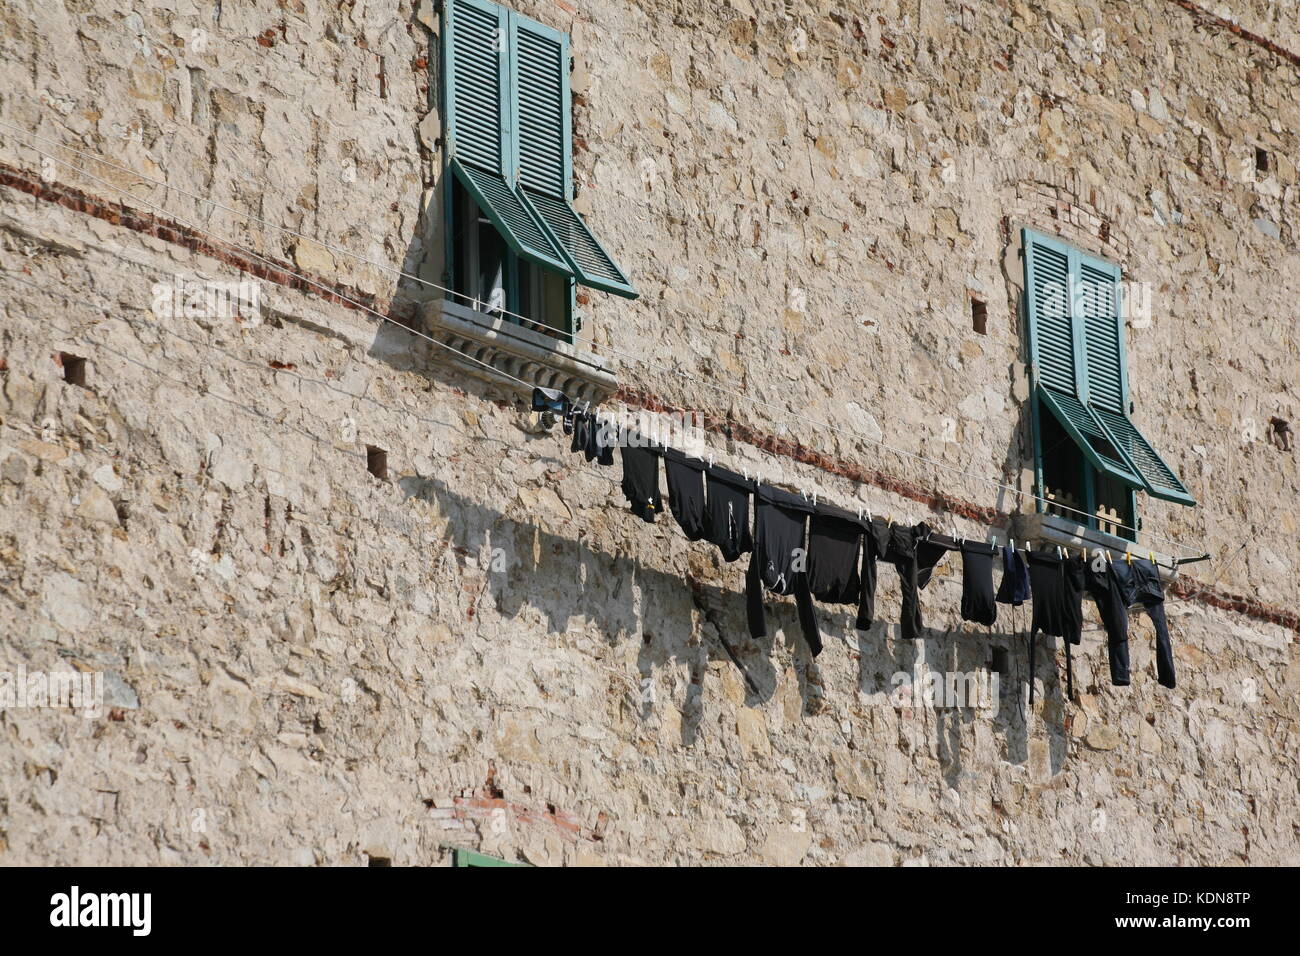 Häuserfront mit Fenster und Wäscheleine in Italien - Hausfront mit Fenster und Wäscheleine in italien Stockfoto